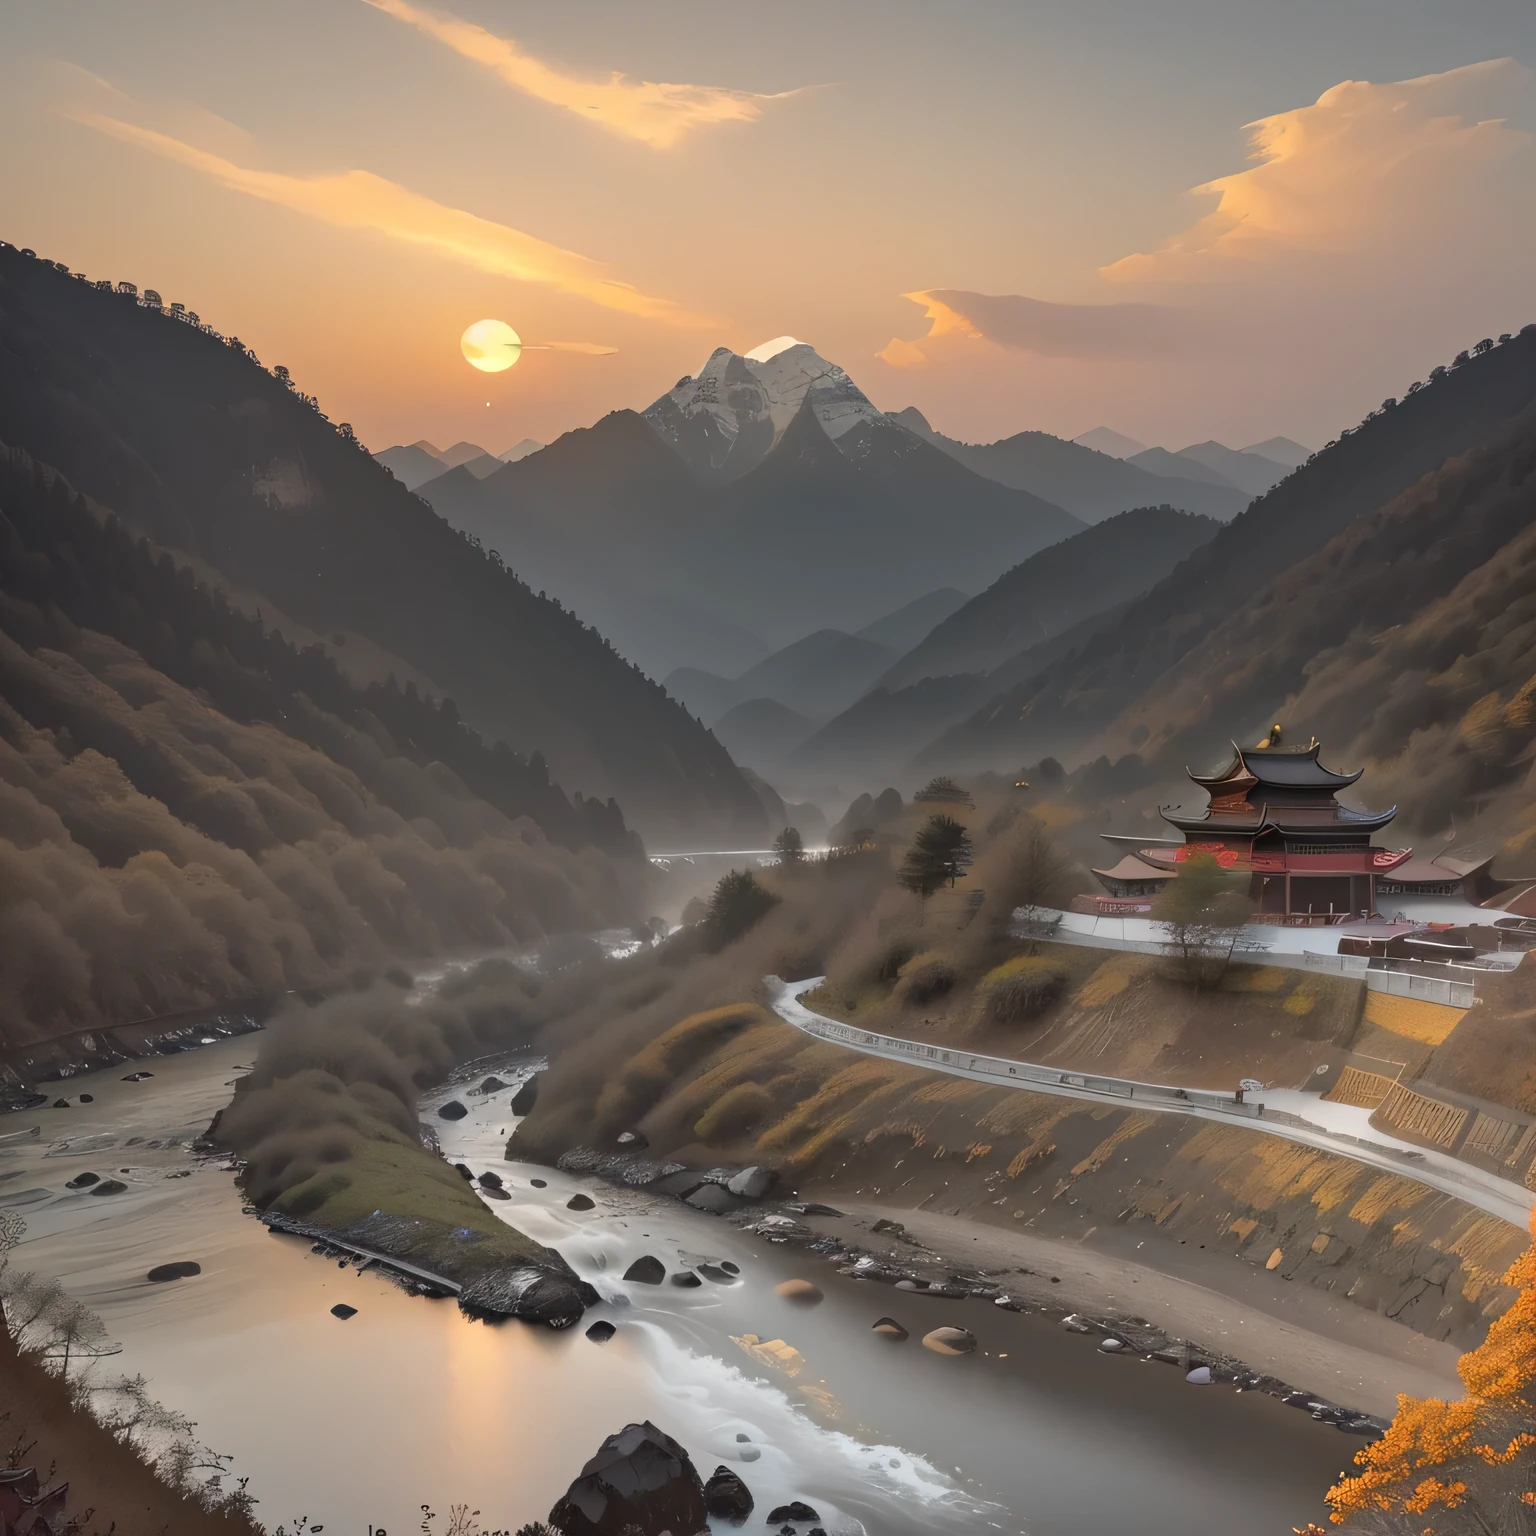 原始照片, 日出, 中國山景, 中國的森林和河流, 舒適, 逼真的, 中國建築稀疏地隱藏在大自然中, 高細節紋理, 8k超高清, 單眼相機, 柔和的燈光, 高品質, 膠片顆粒, 富士XT3, 索尼A7 IV, 高度詳細的攝影, (柔和的顏色, 電影般的, 暗淡的顏色, 舒緩的音調:1.2), 充滿活力, 極為詳細, 超詳細的, (黑暗射擊:1.2), (維斯科:0.3), (複雜的細節:0.9), (高動態範圍, 超詳細的:1.2) (最高的一致性: 1.39) (最好的品質: 1.39) (三分法) (獲獎的) (碩士課) (最高解析度: 1.39), 初升的太陽溫暖地照耀著這片自然的土地